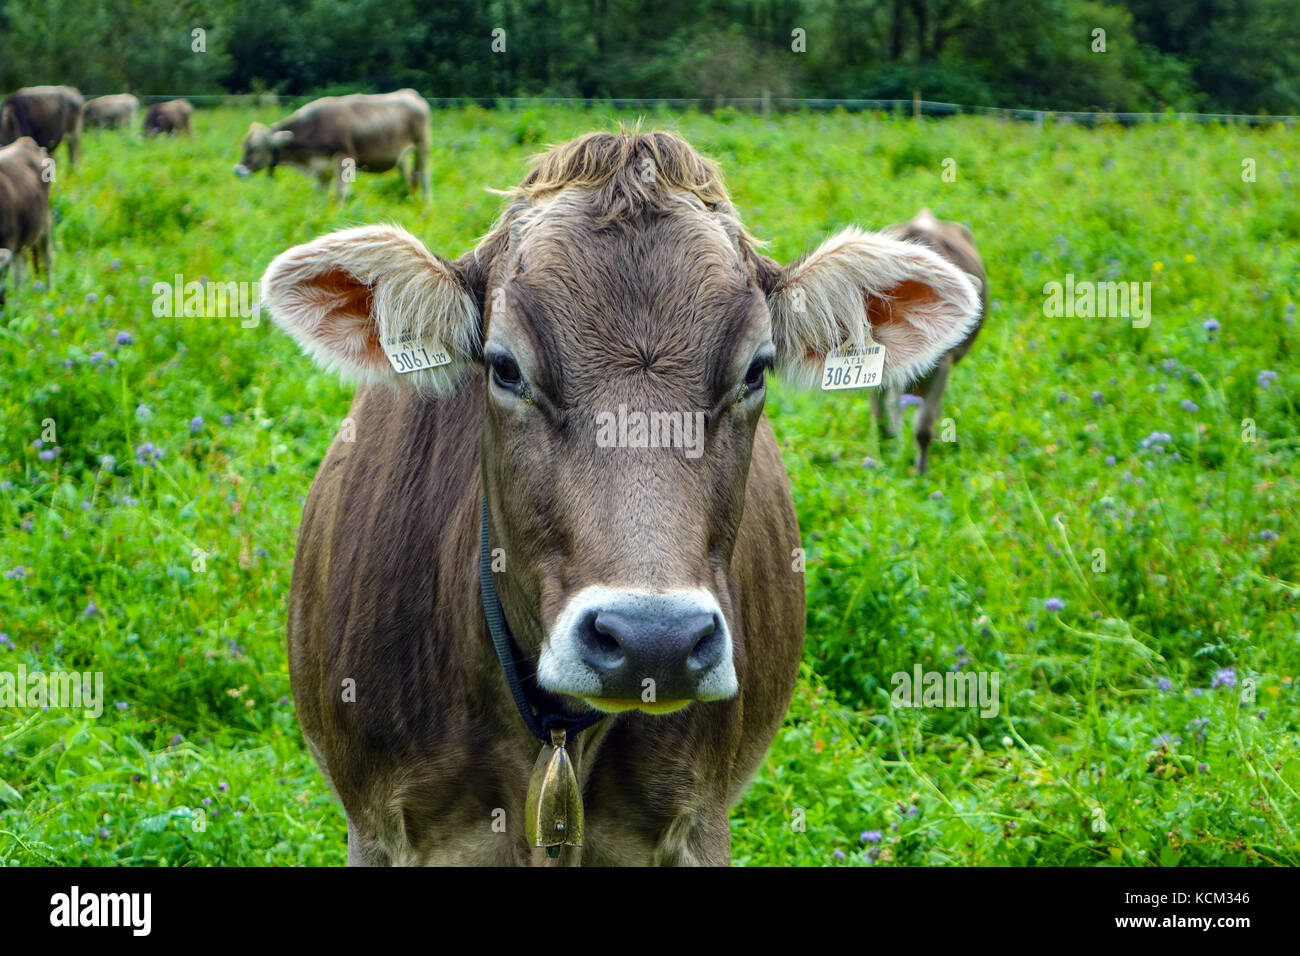 Vache brune avec l'oreille looking at camera, Autriche Banque D'Images